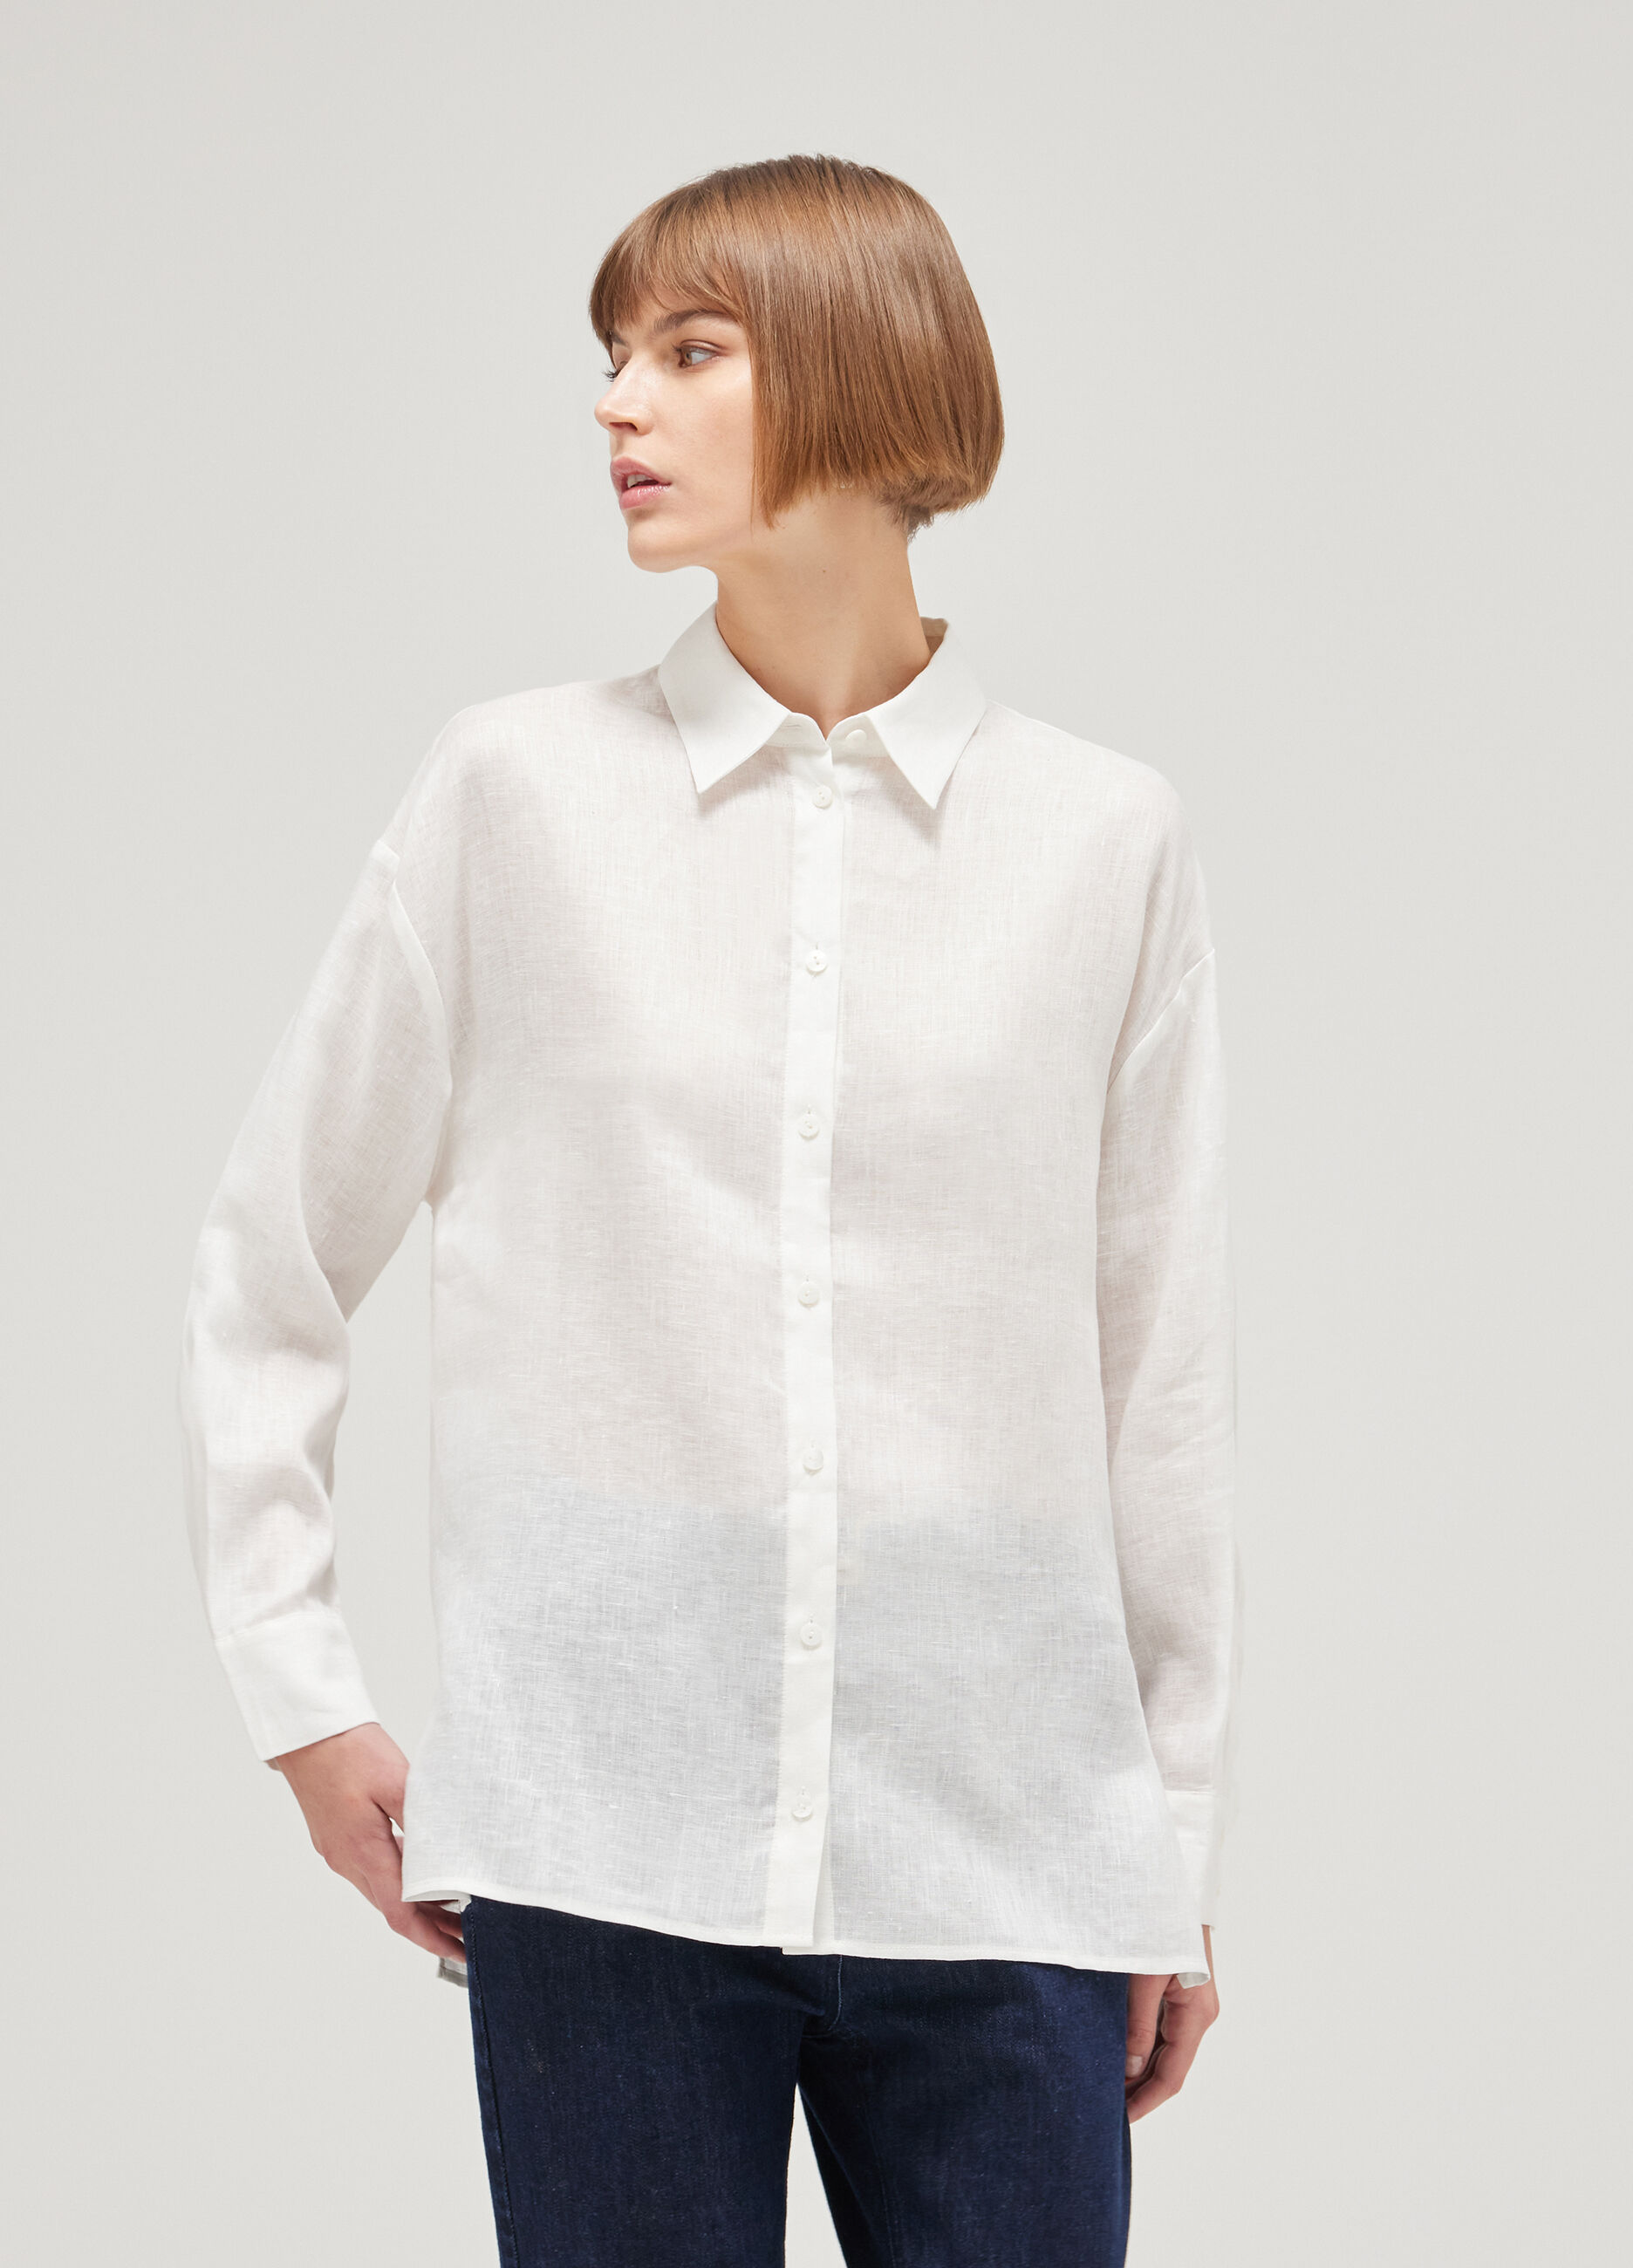 Long-sleeved linen shirt